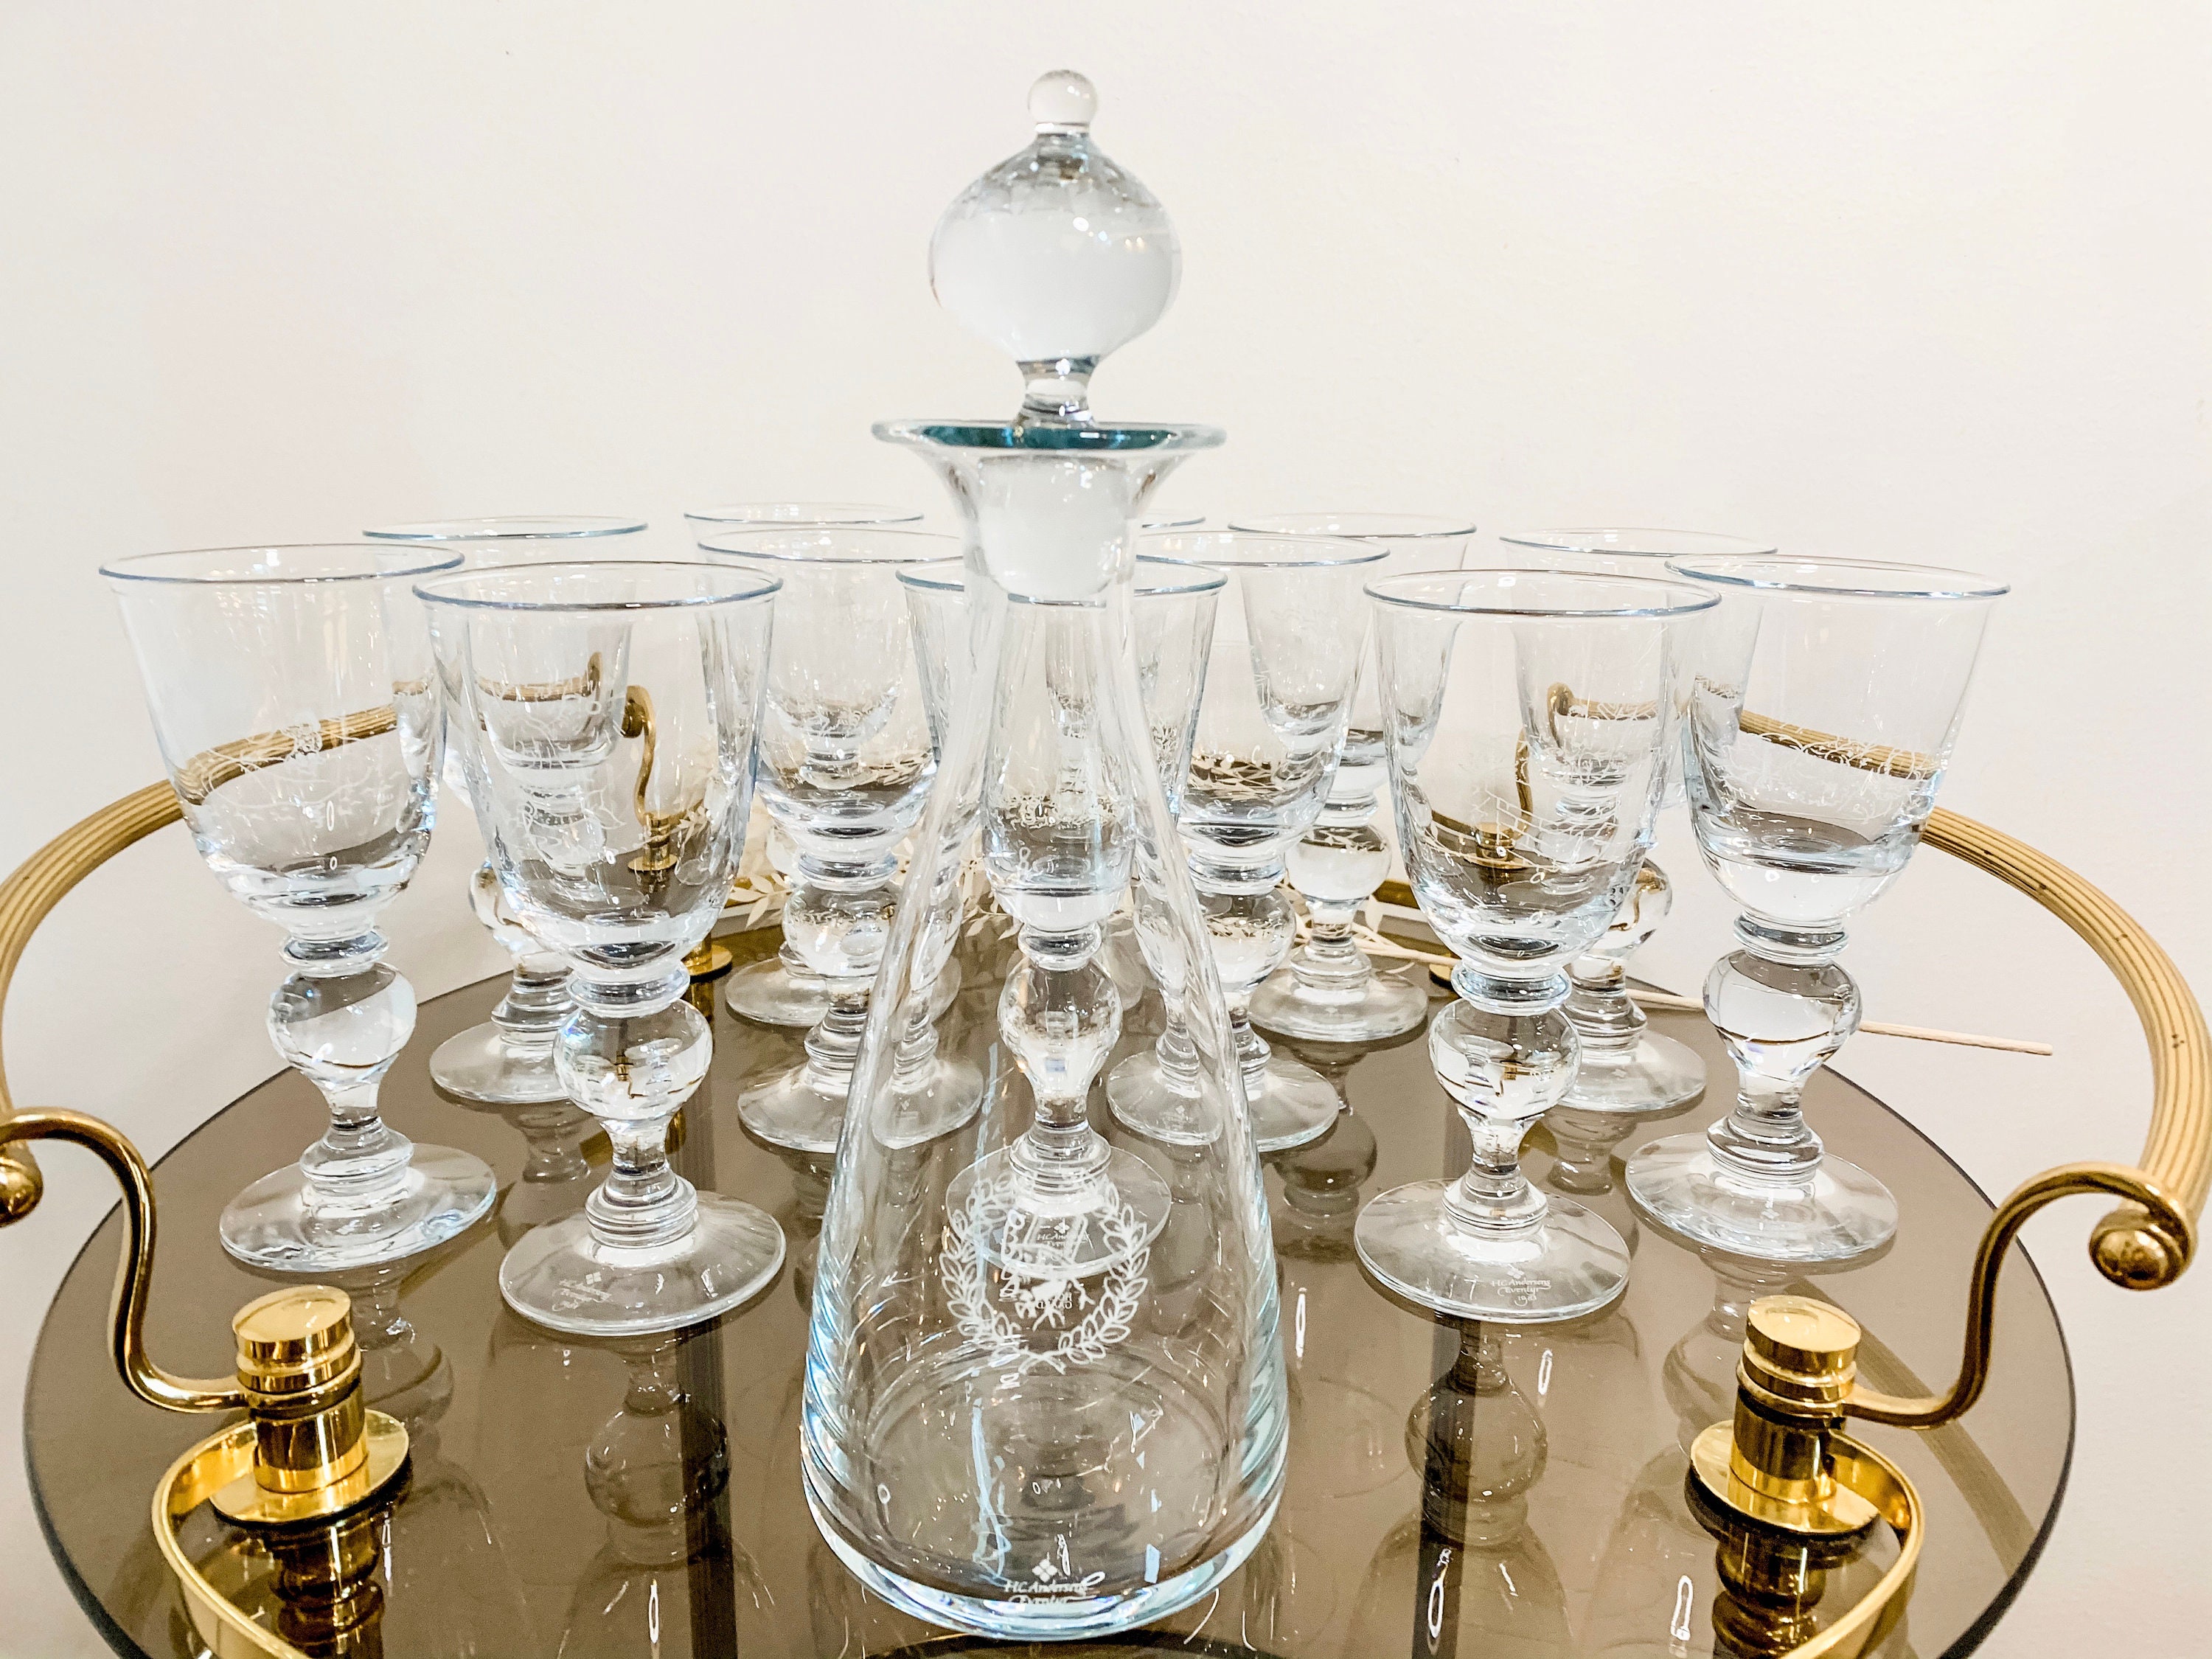 Set of Four Small Pulcinella Wine Glasses - White